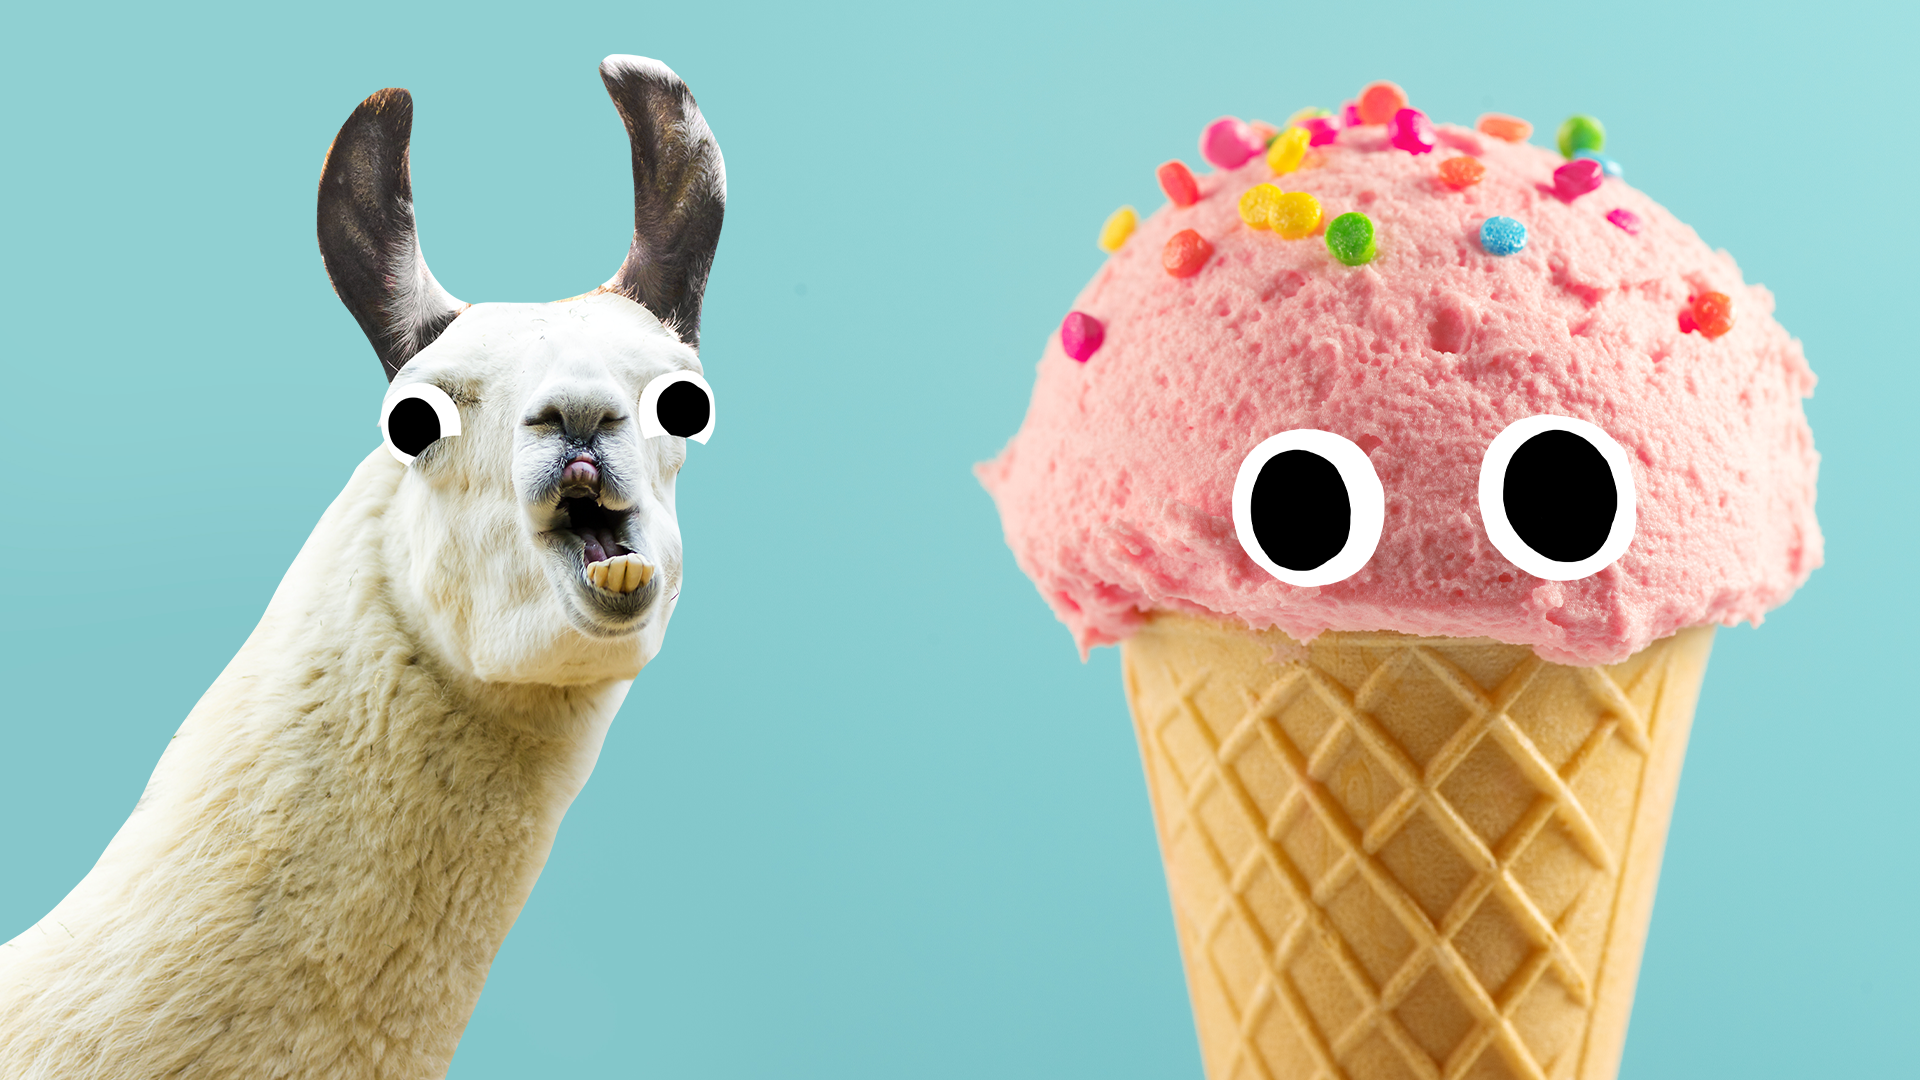 Llama and ice cream on turquoise background